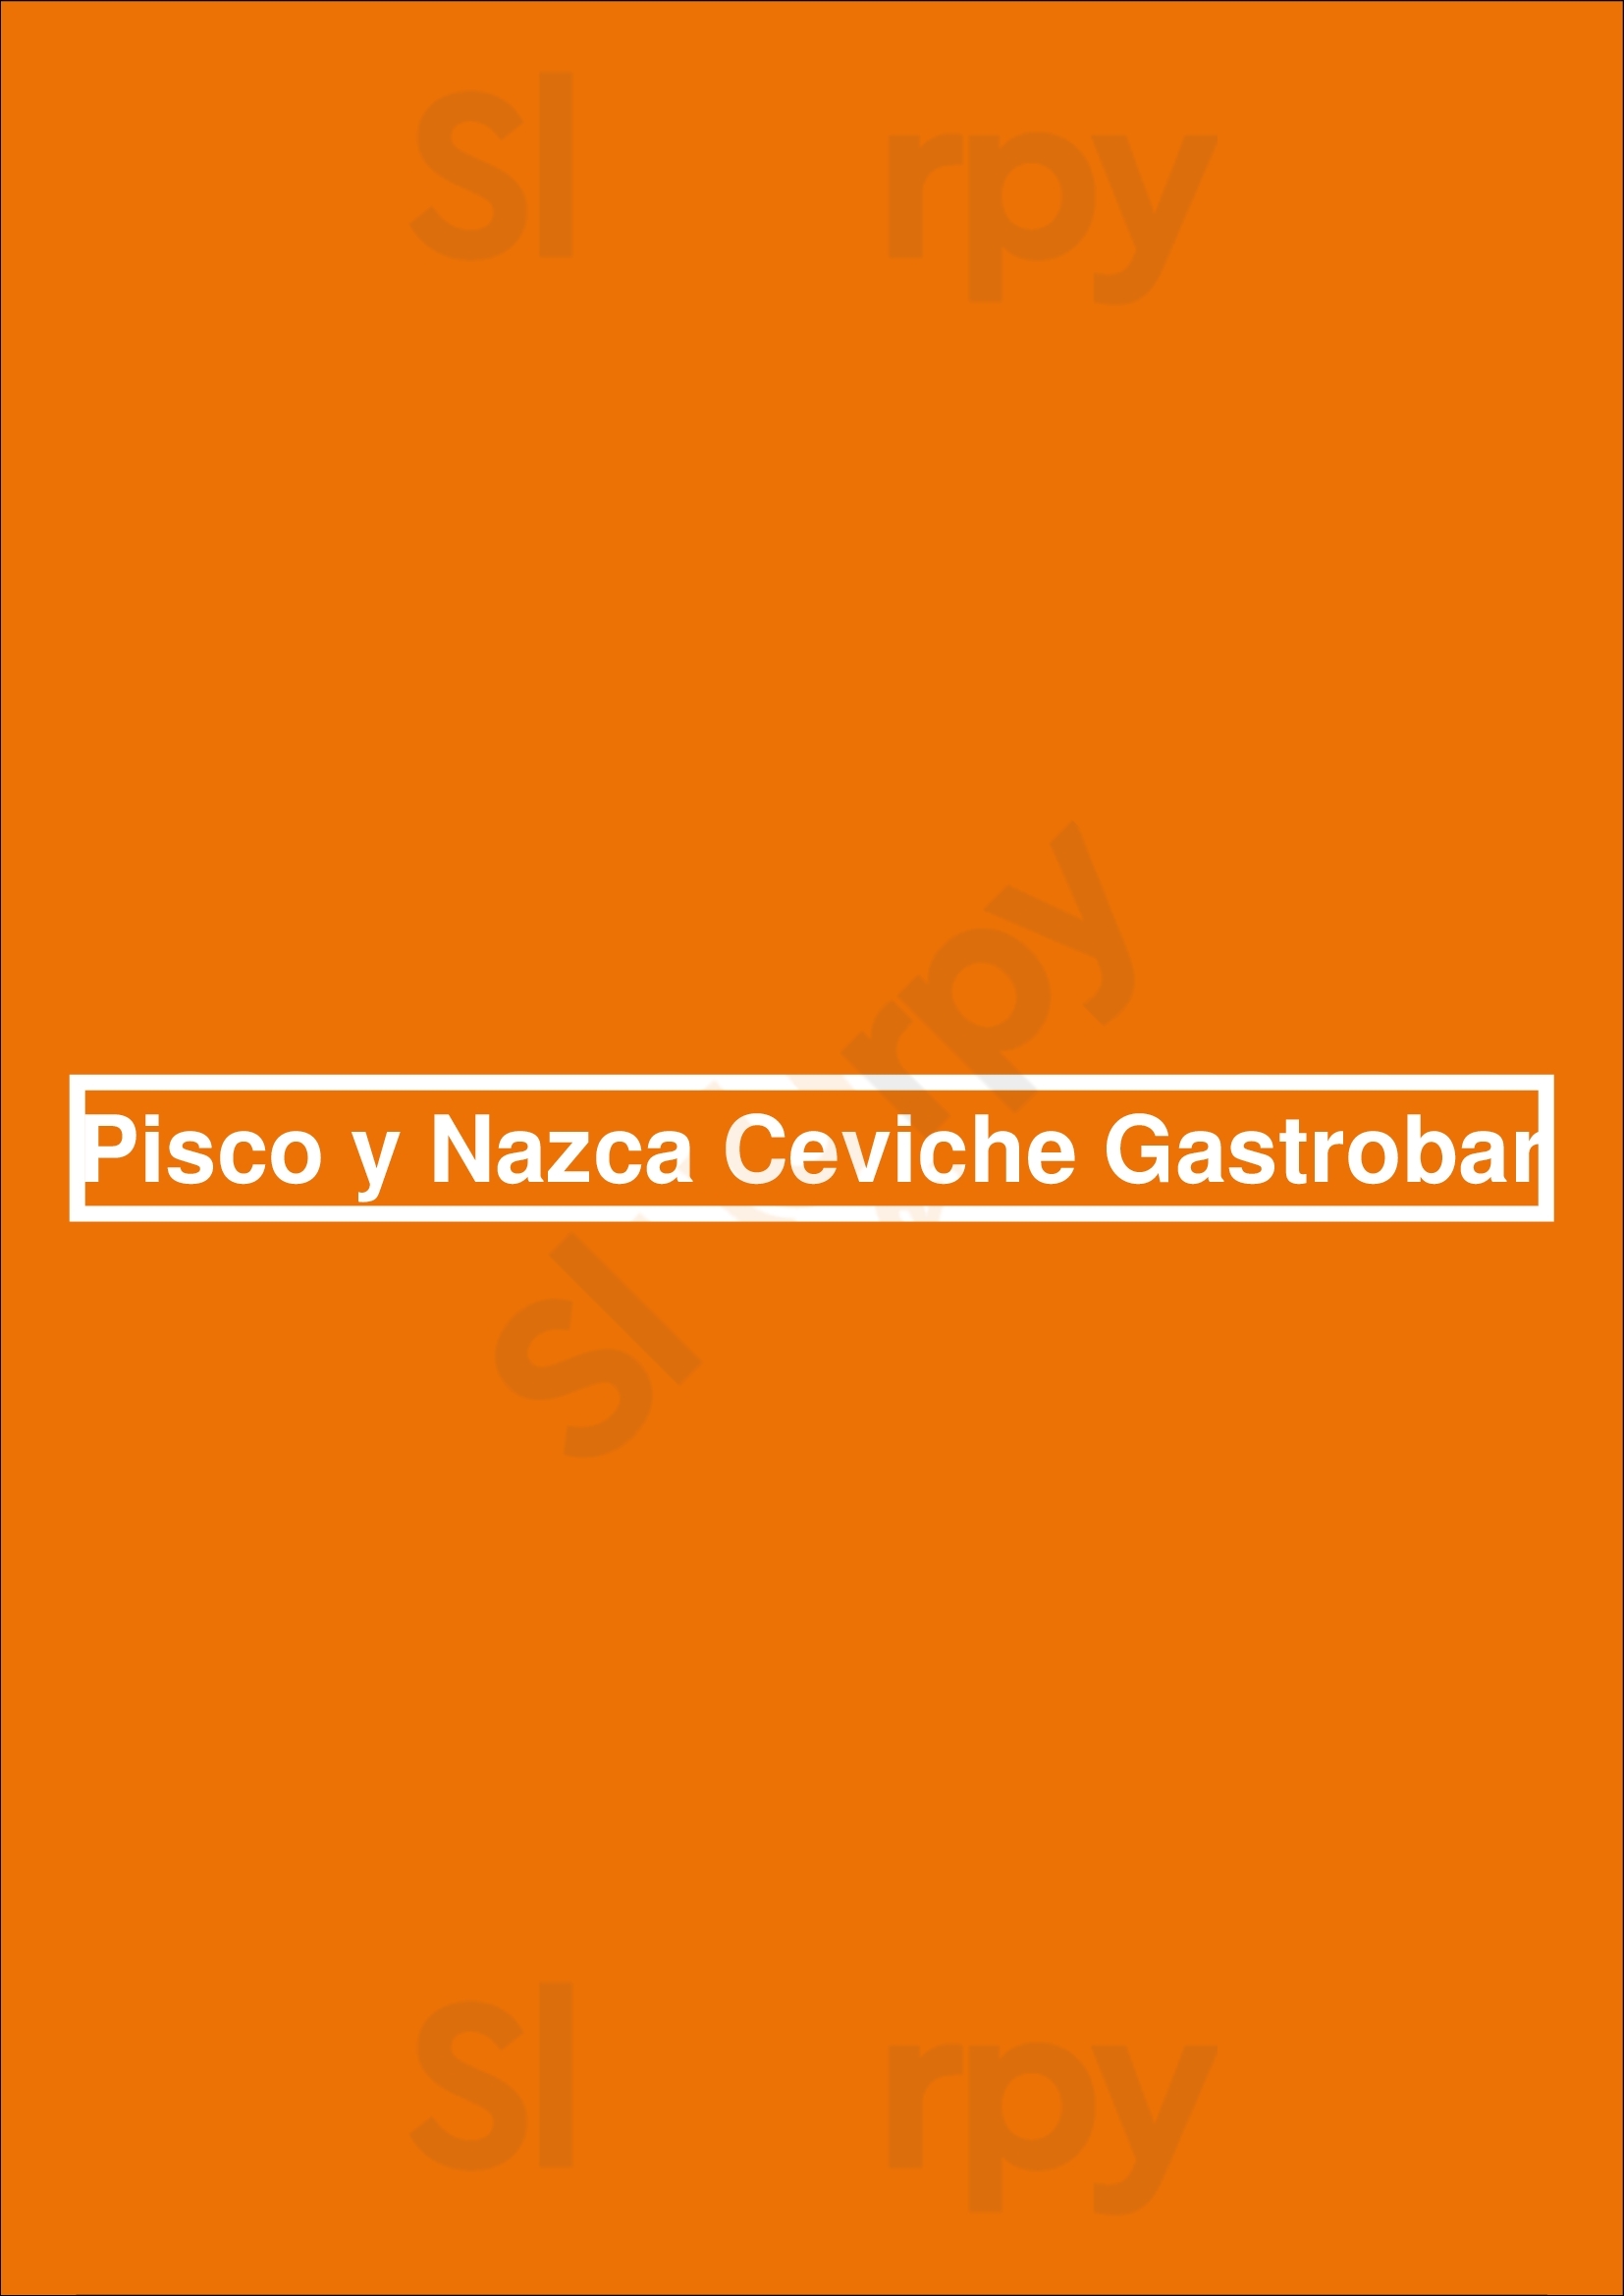 Pisco Y Nazca Ceviche Gastrobar Kendall Menu - 1